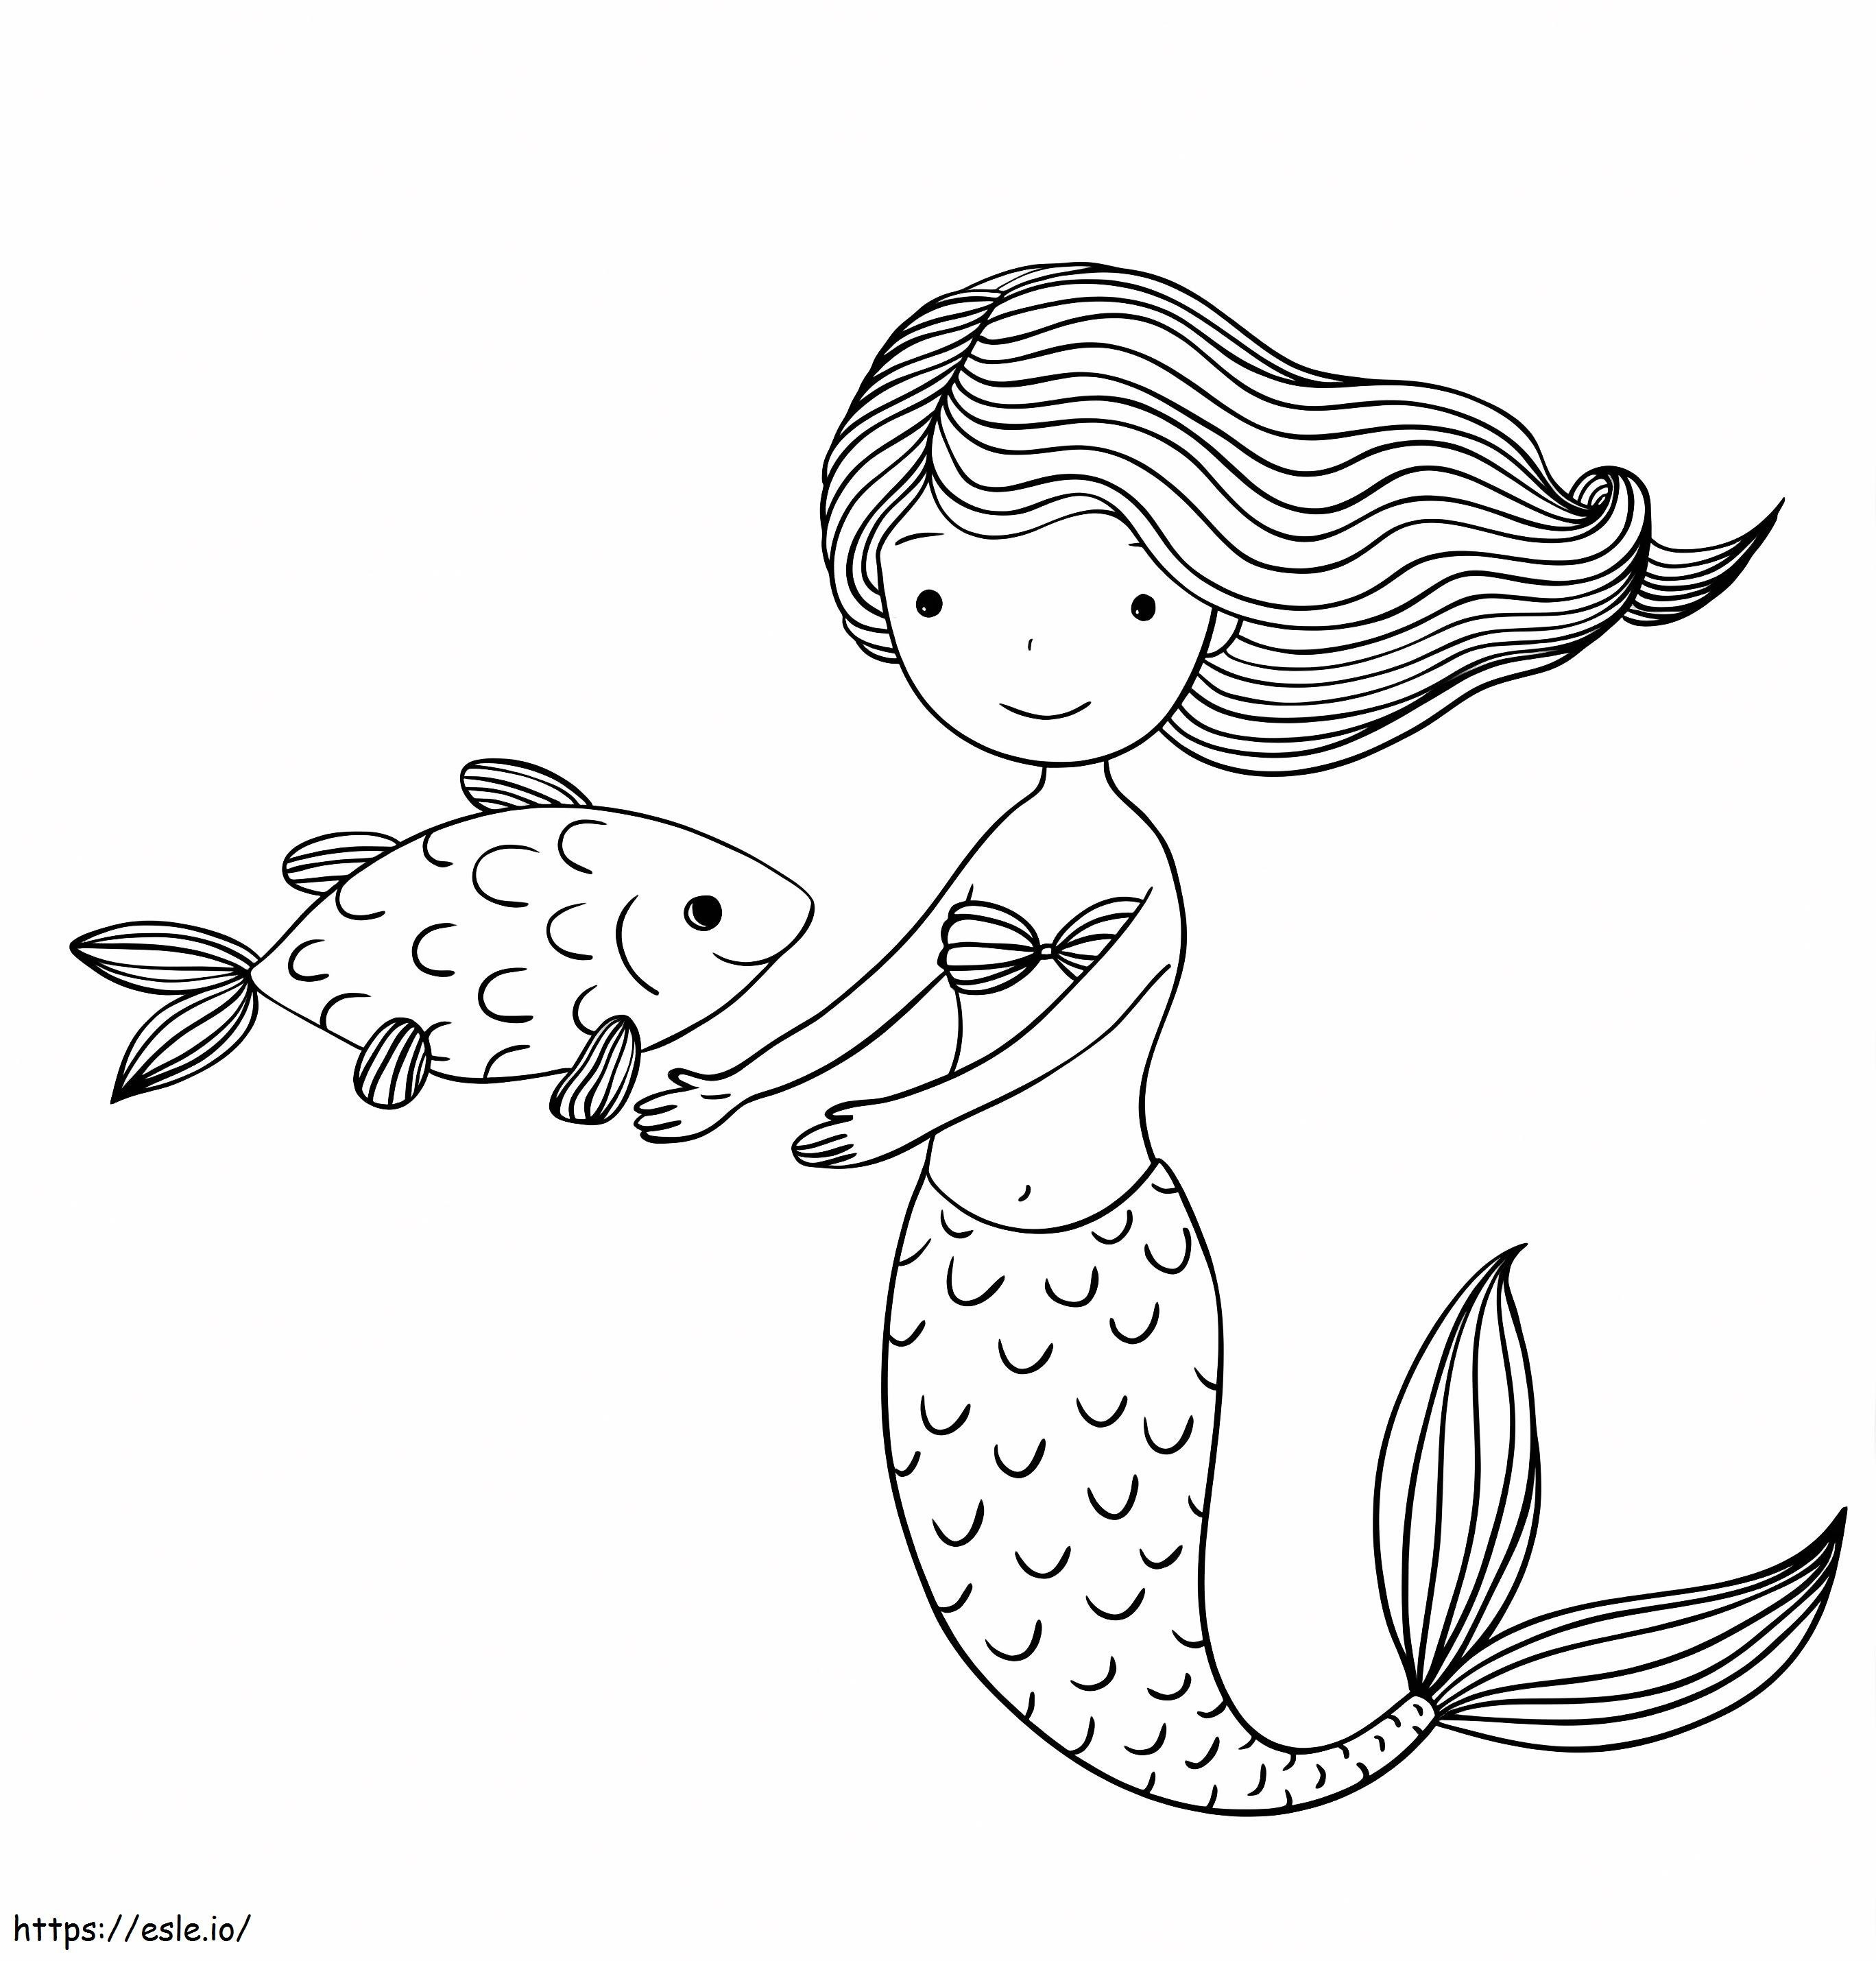 Süße Meerjungfrau und Fische ausmalbilder